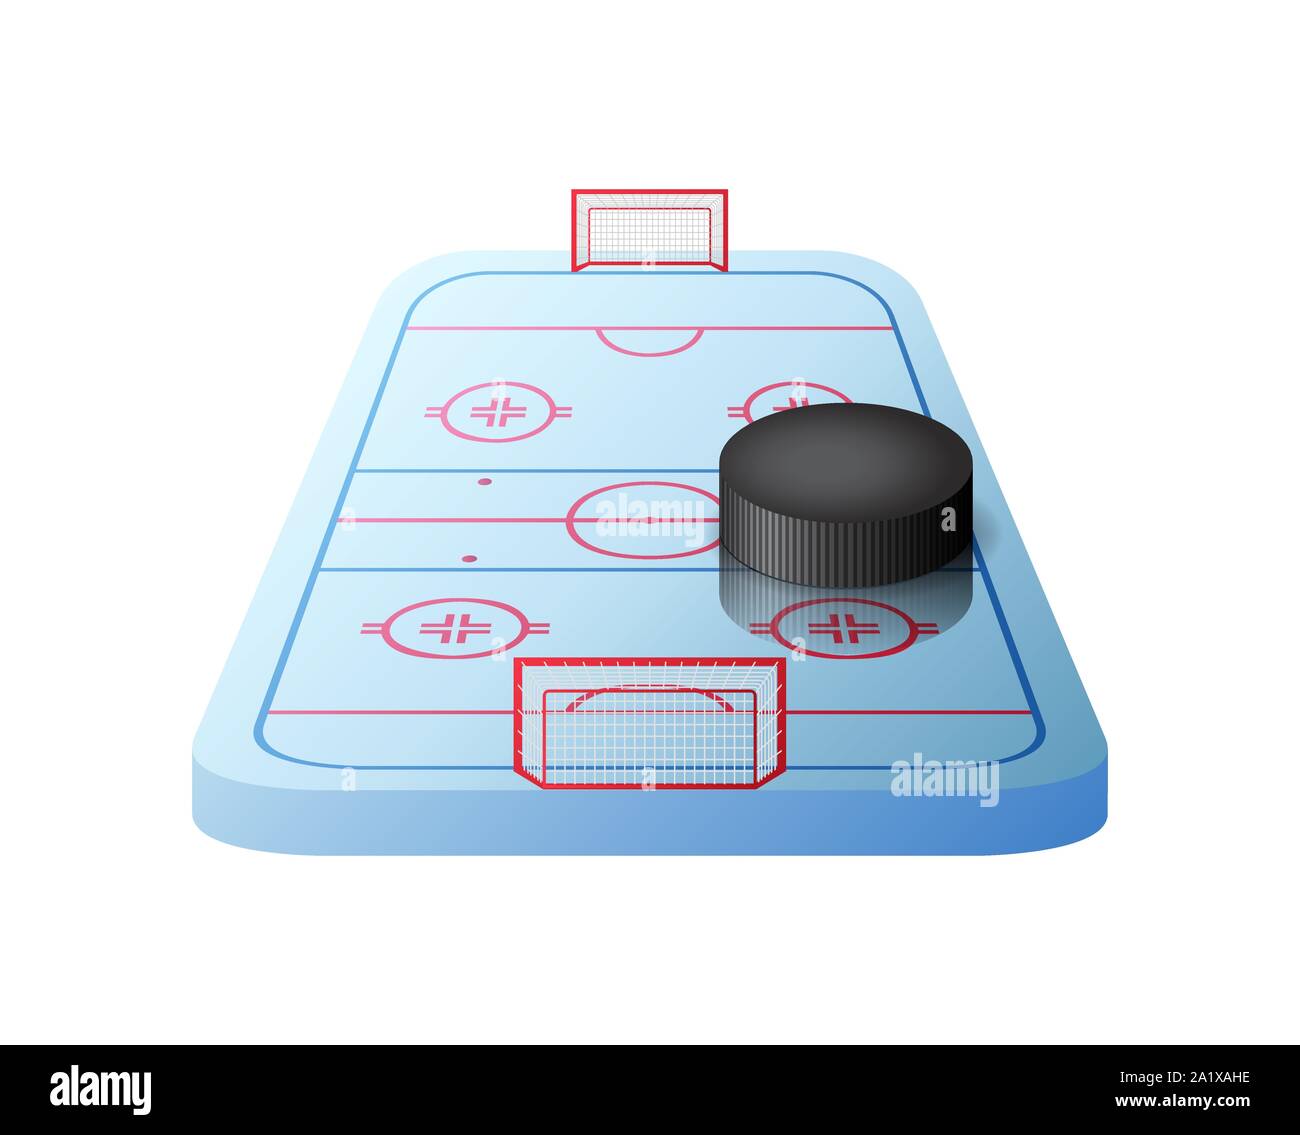 Patinoire de hockey 3d avec des portes et isolées rondelle noire Illustration de Vecteur